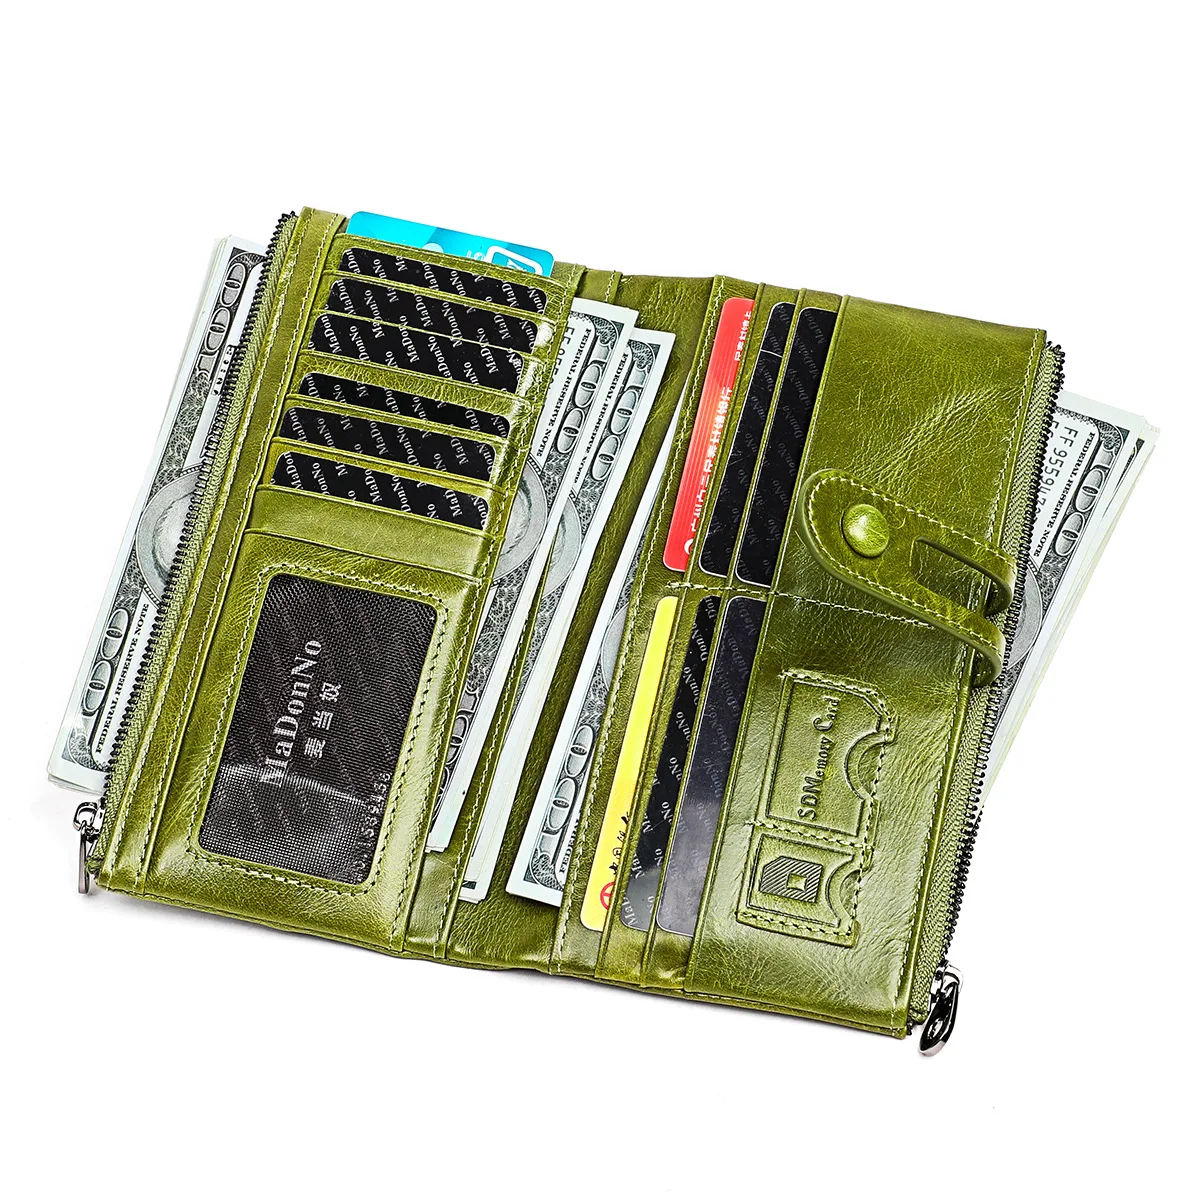 RFID-женский кошелек, кожаный бумажник из воловьей кожи, многофункциональный кошелек для мелочи, ручная сумка, лучший подарок на день рождения